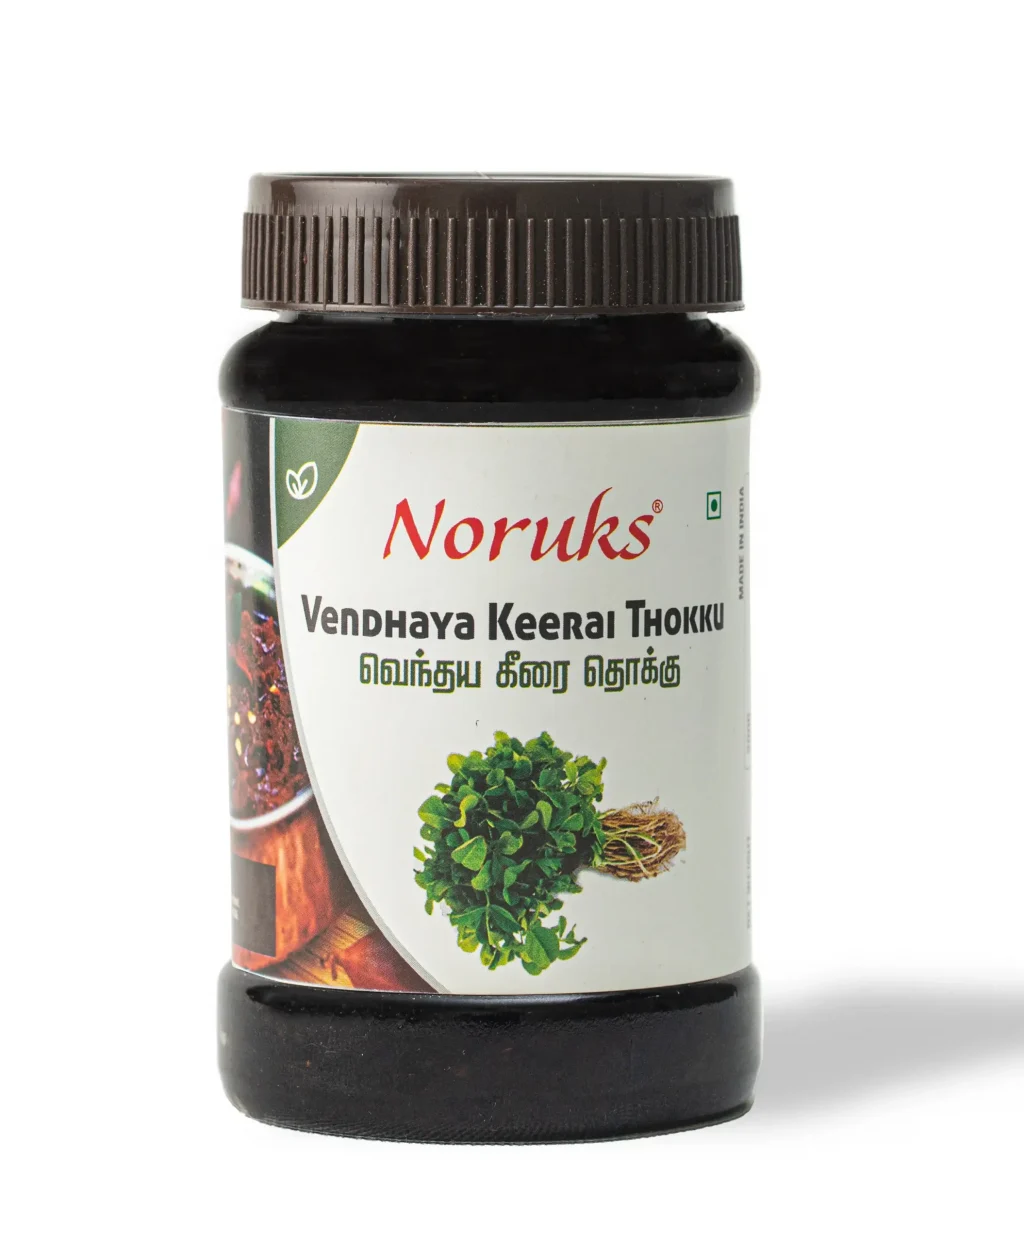 Buy Vendhaya Keerai Thokku /Chutney Online from Noruks